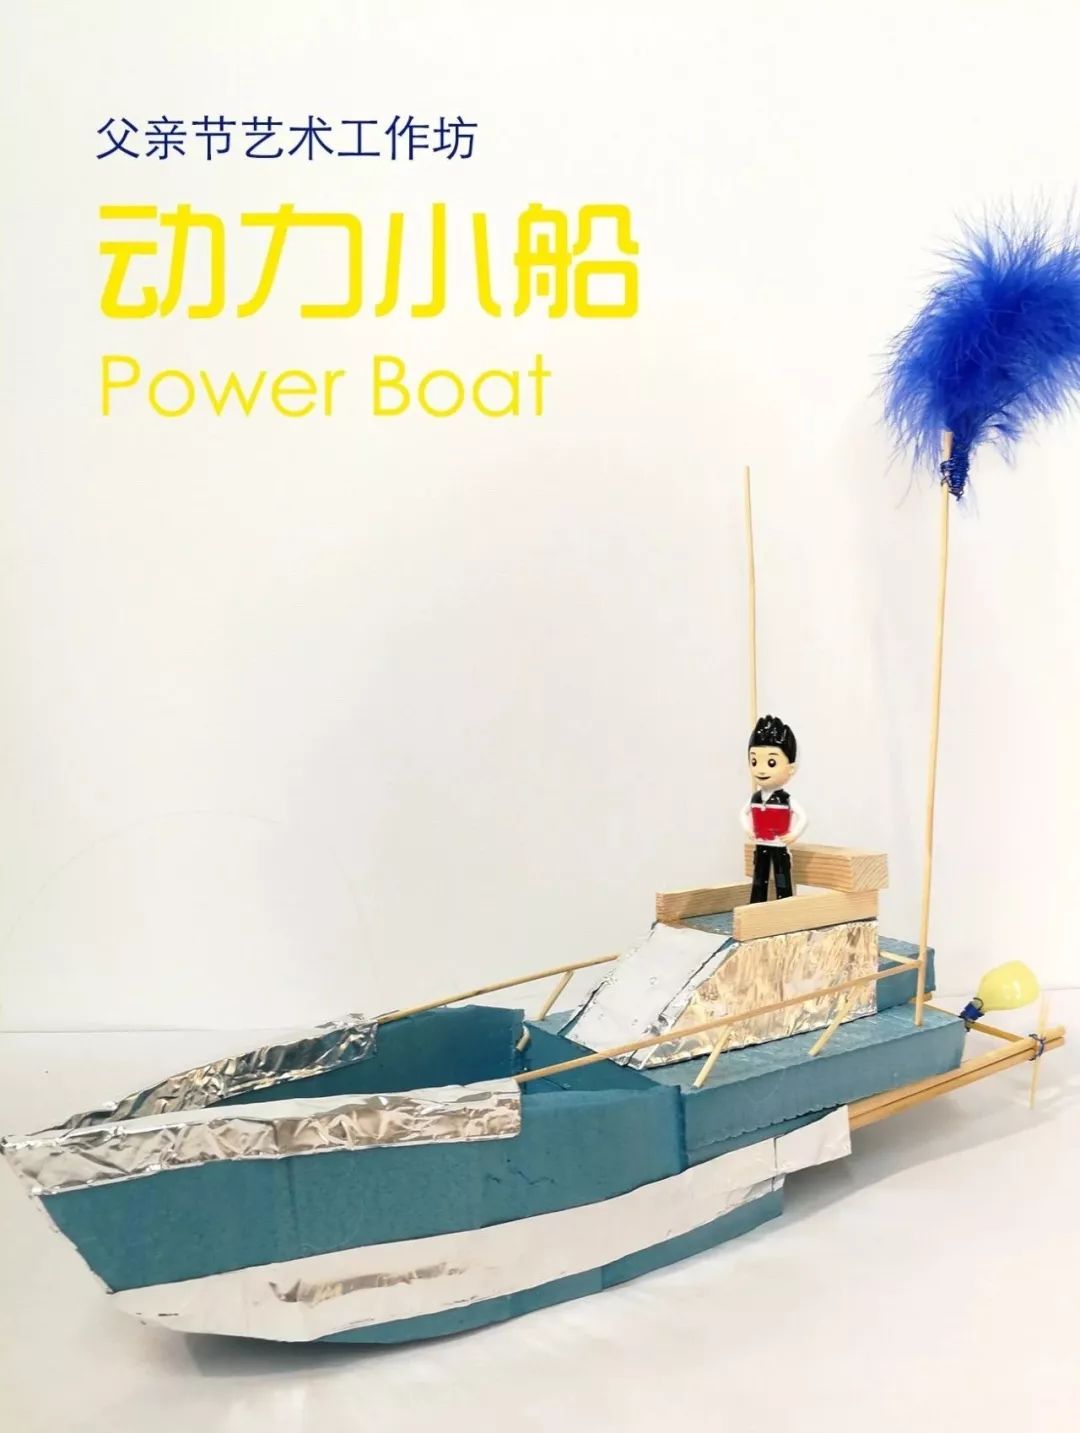 创意电动风力小船 - 上海科普网